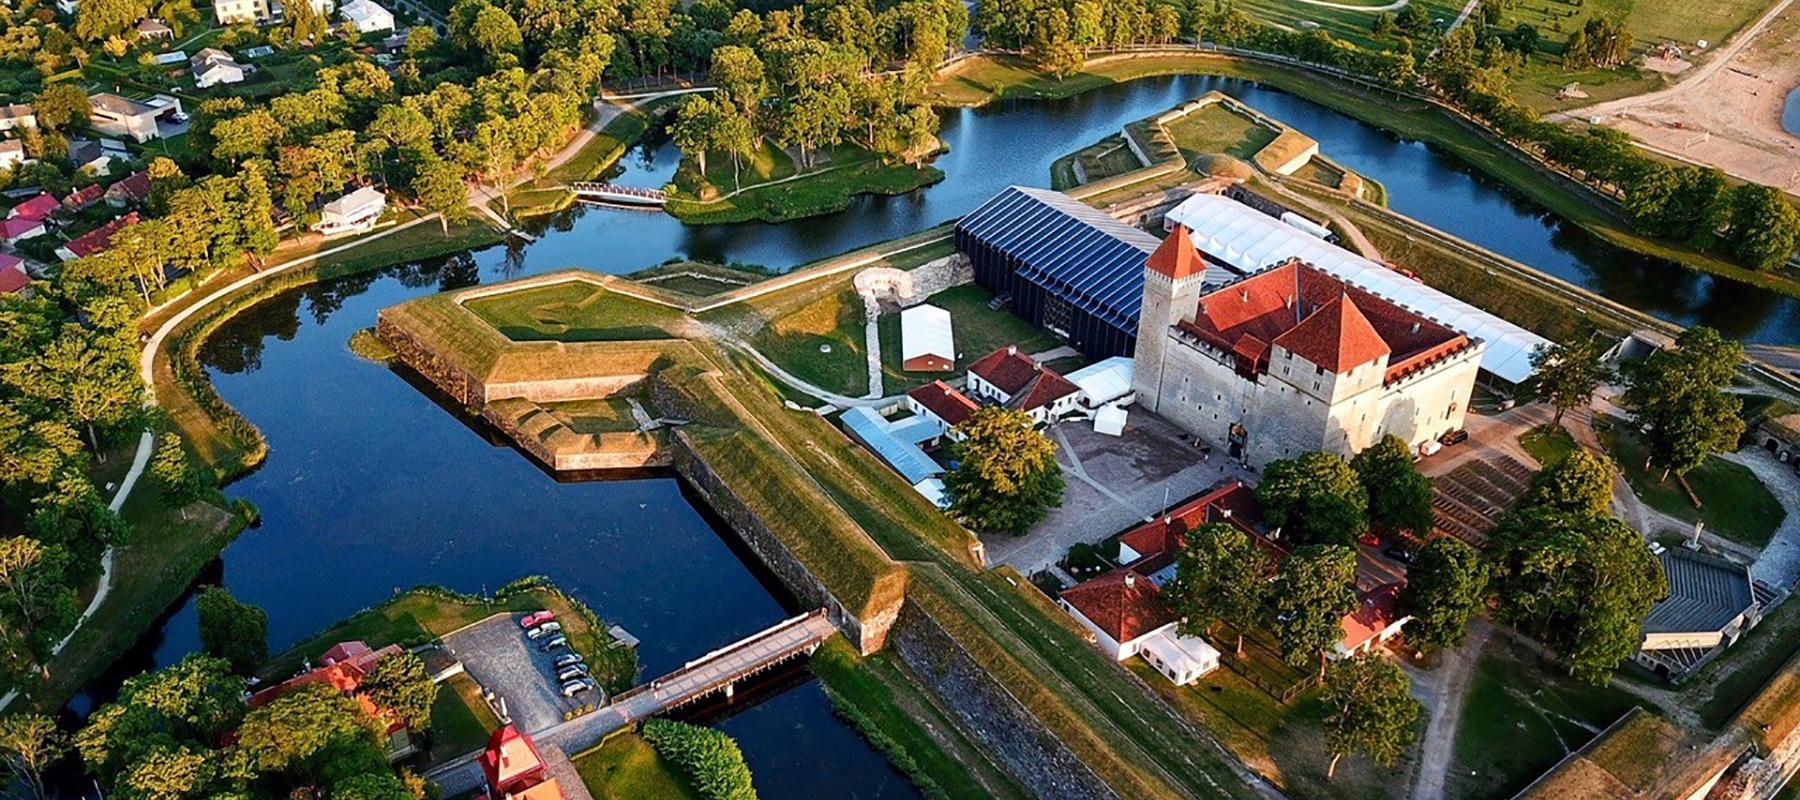 Saaremaa ooperipäevad on Baltimaade populaarseim ooperifestival, mis leiab aset südasuvel Kuressaare ajaloolises lossihoovis, kuhu selle tarvis püstit